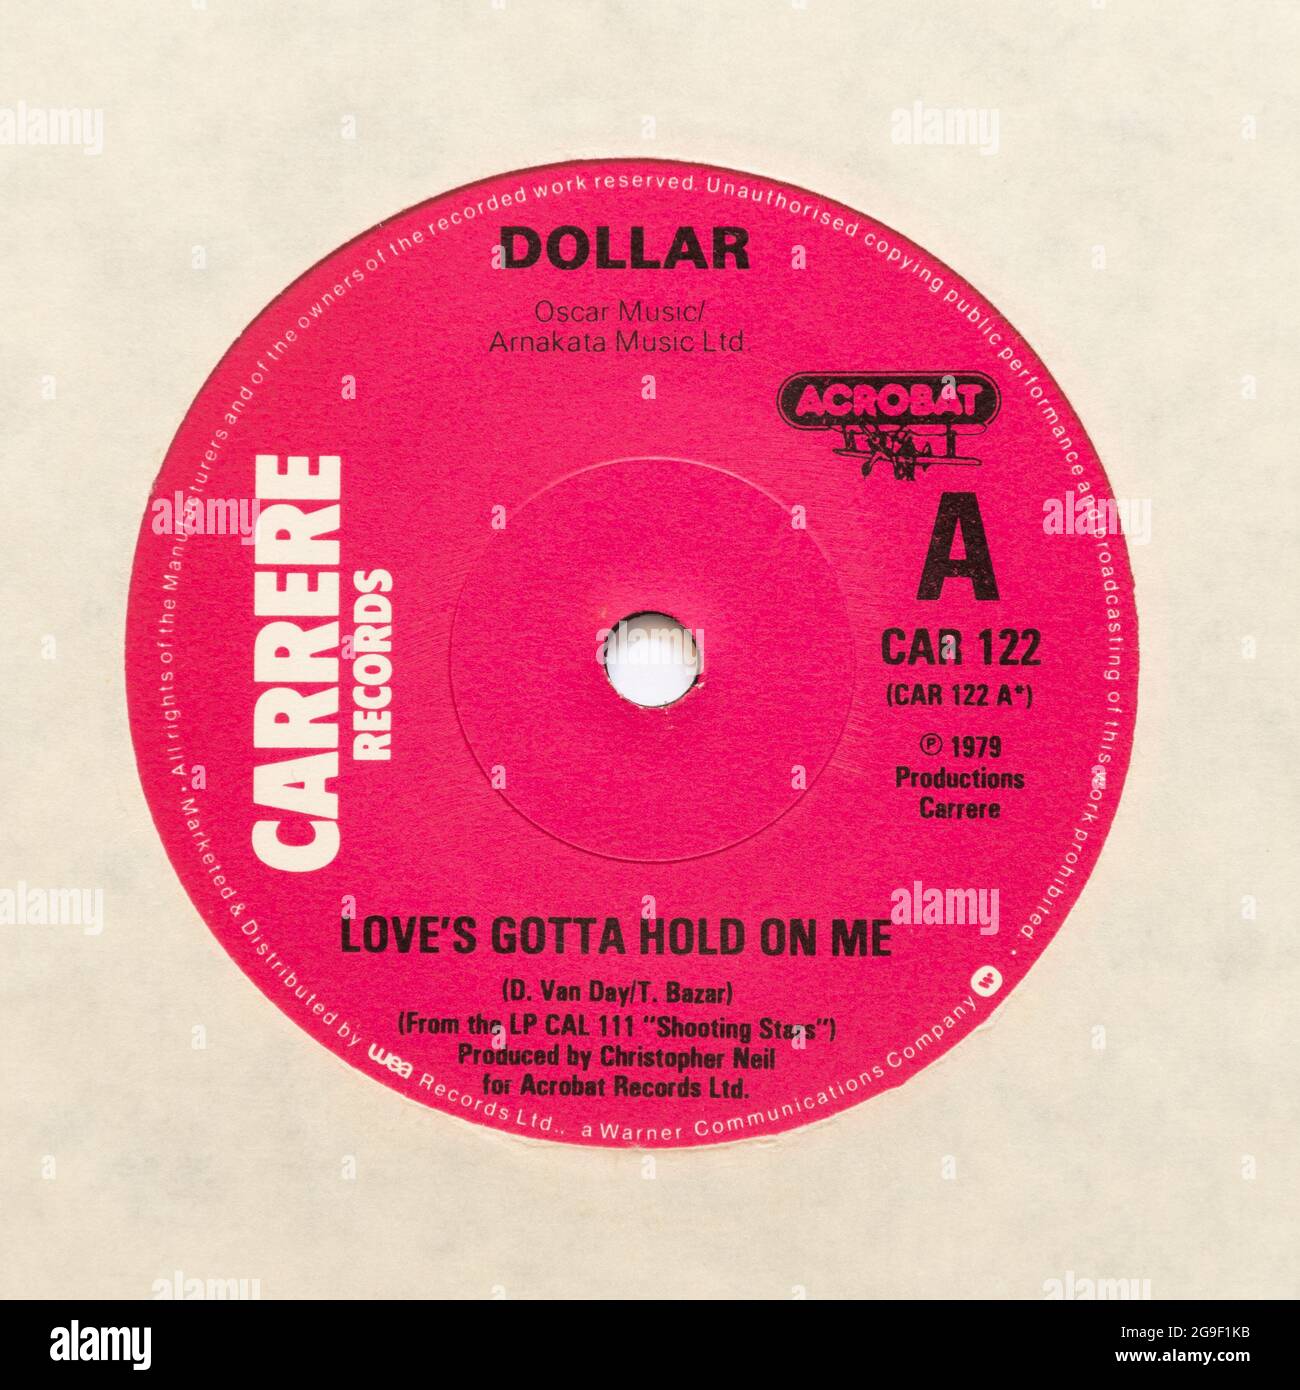 Love's Gotta Hold on Me del duo pop britannico Dollar, una foto d'archivio del disco in vinile singolo da 7' a 45 giri/min in copertina Foto Stock